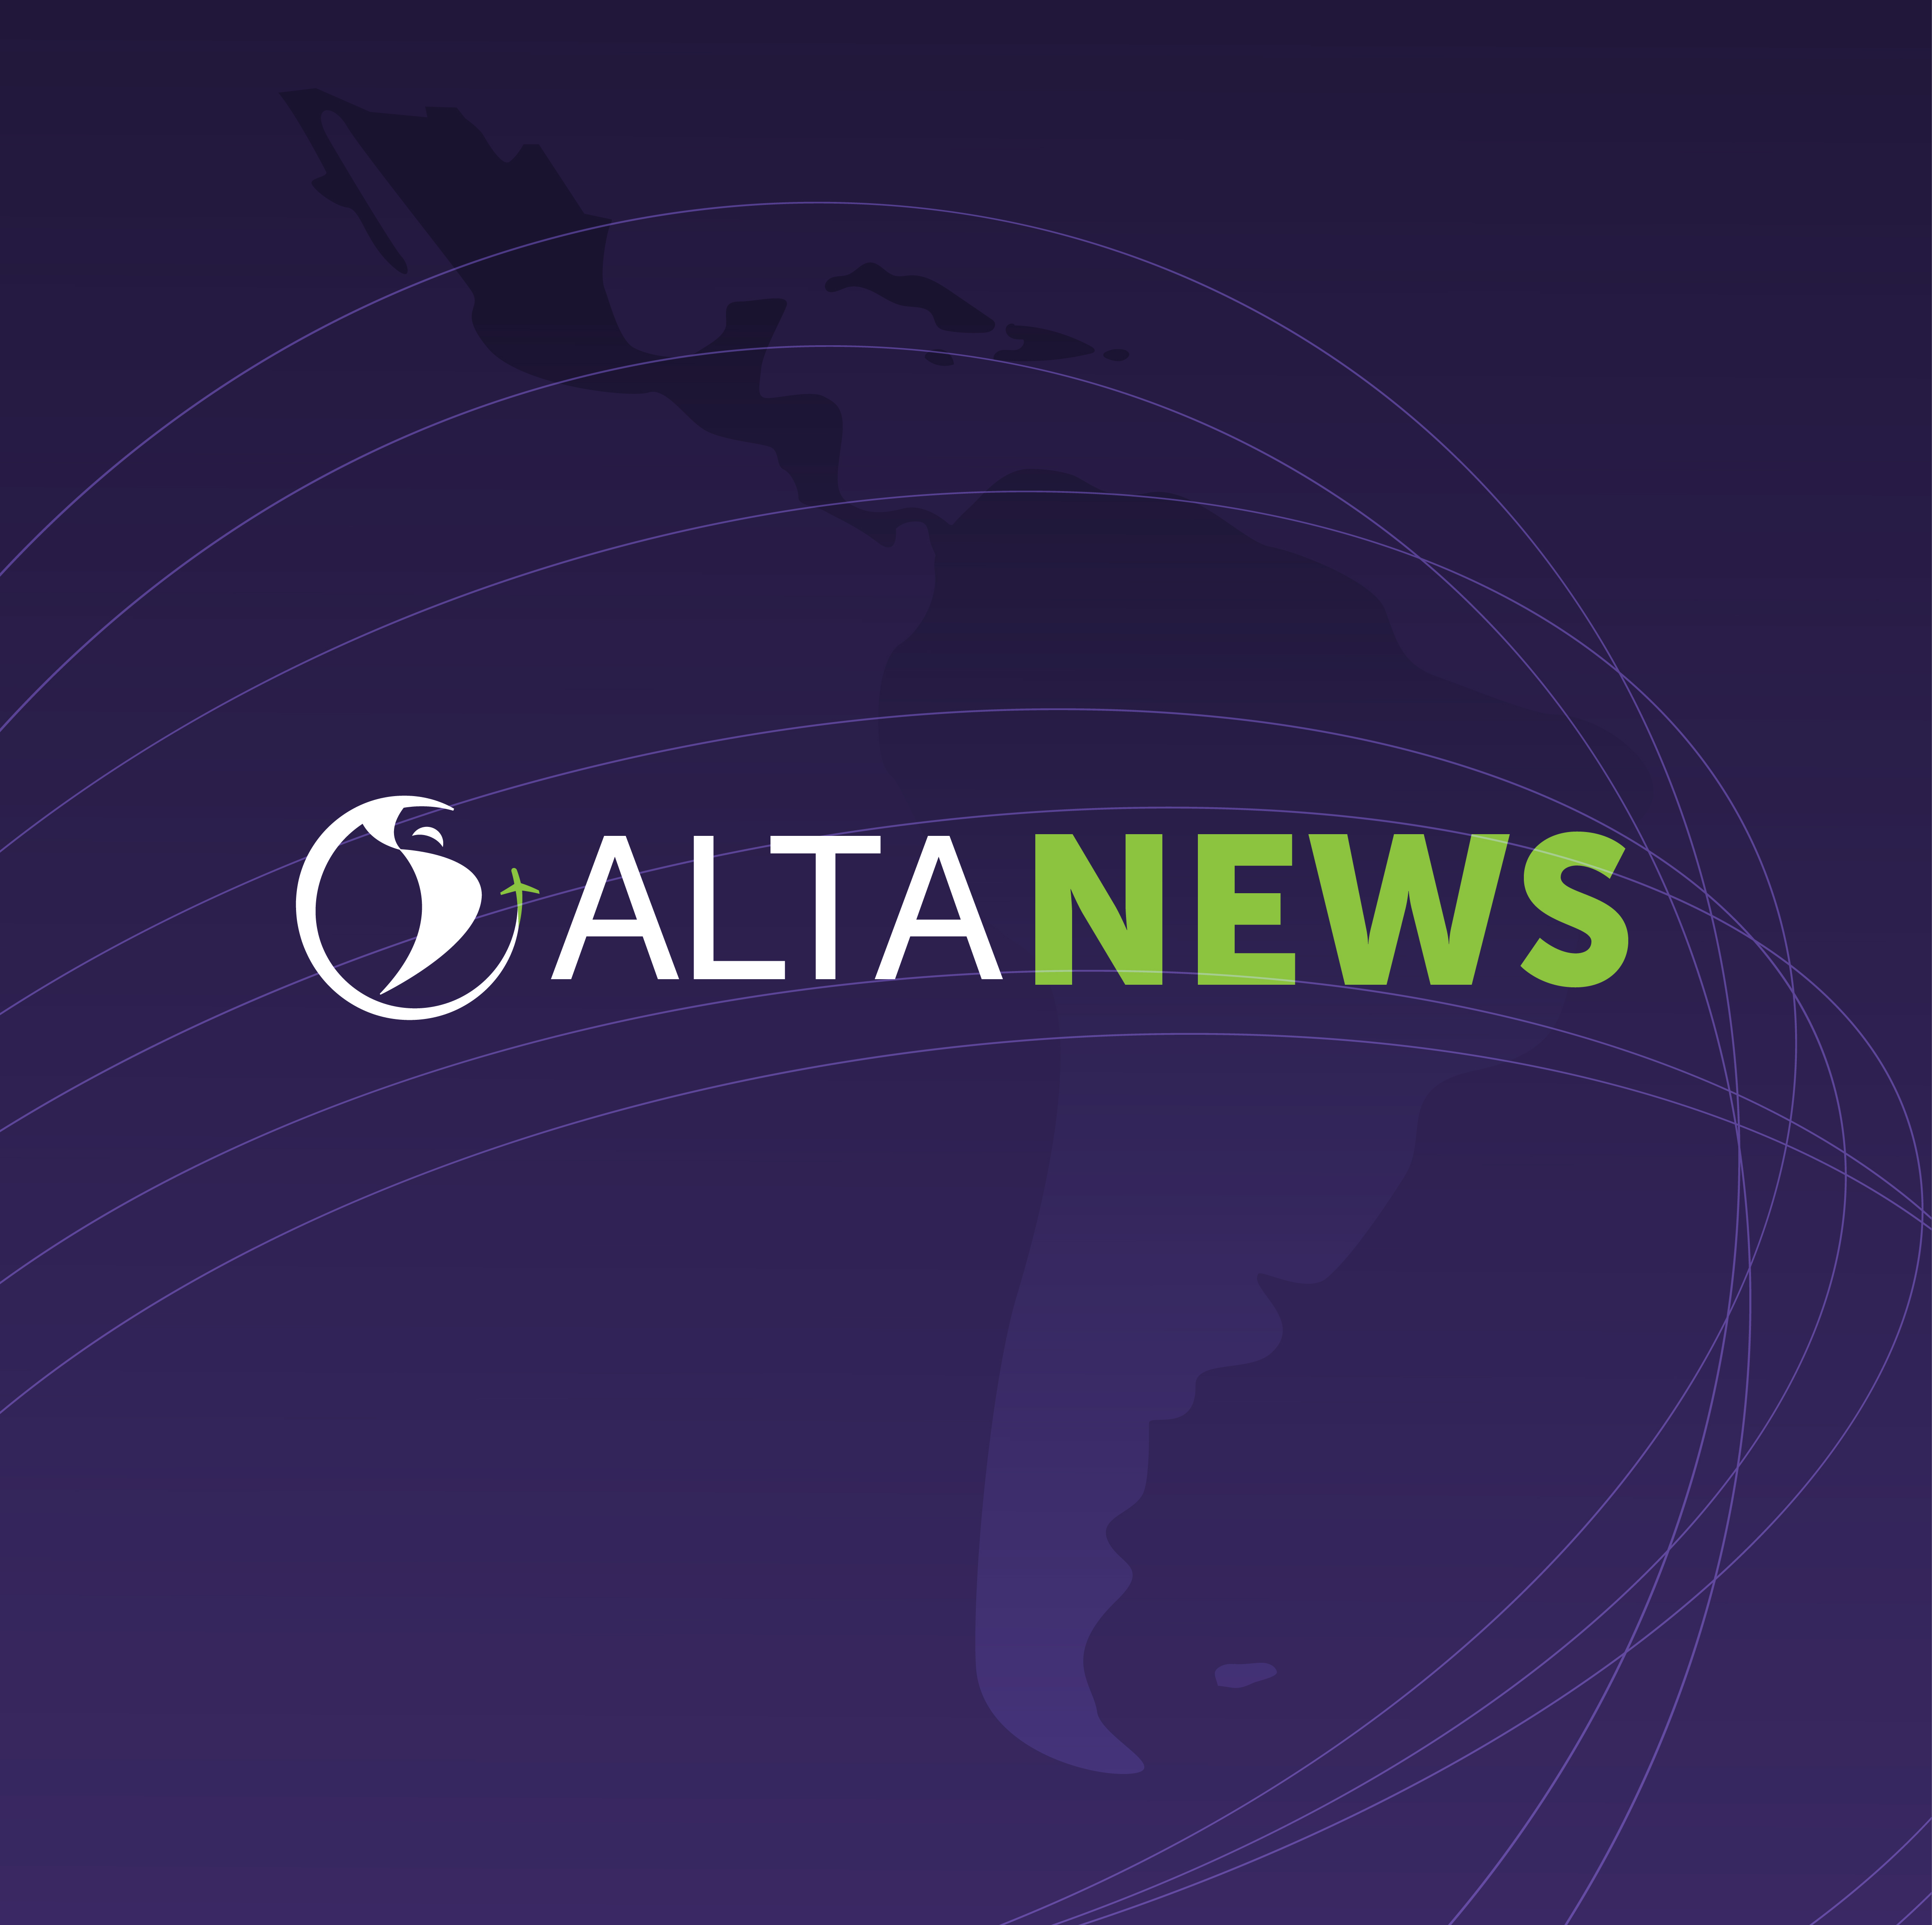 ALTA NEWS - As companhias aéreas da América Latina e do Caribe alcançaram uma eficiência anual de combustível de 2,7%